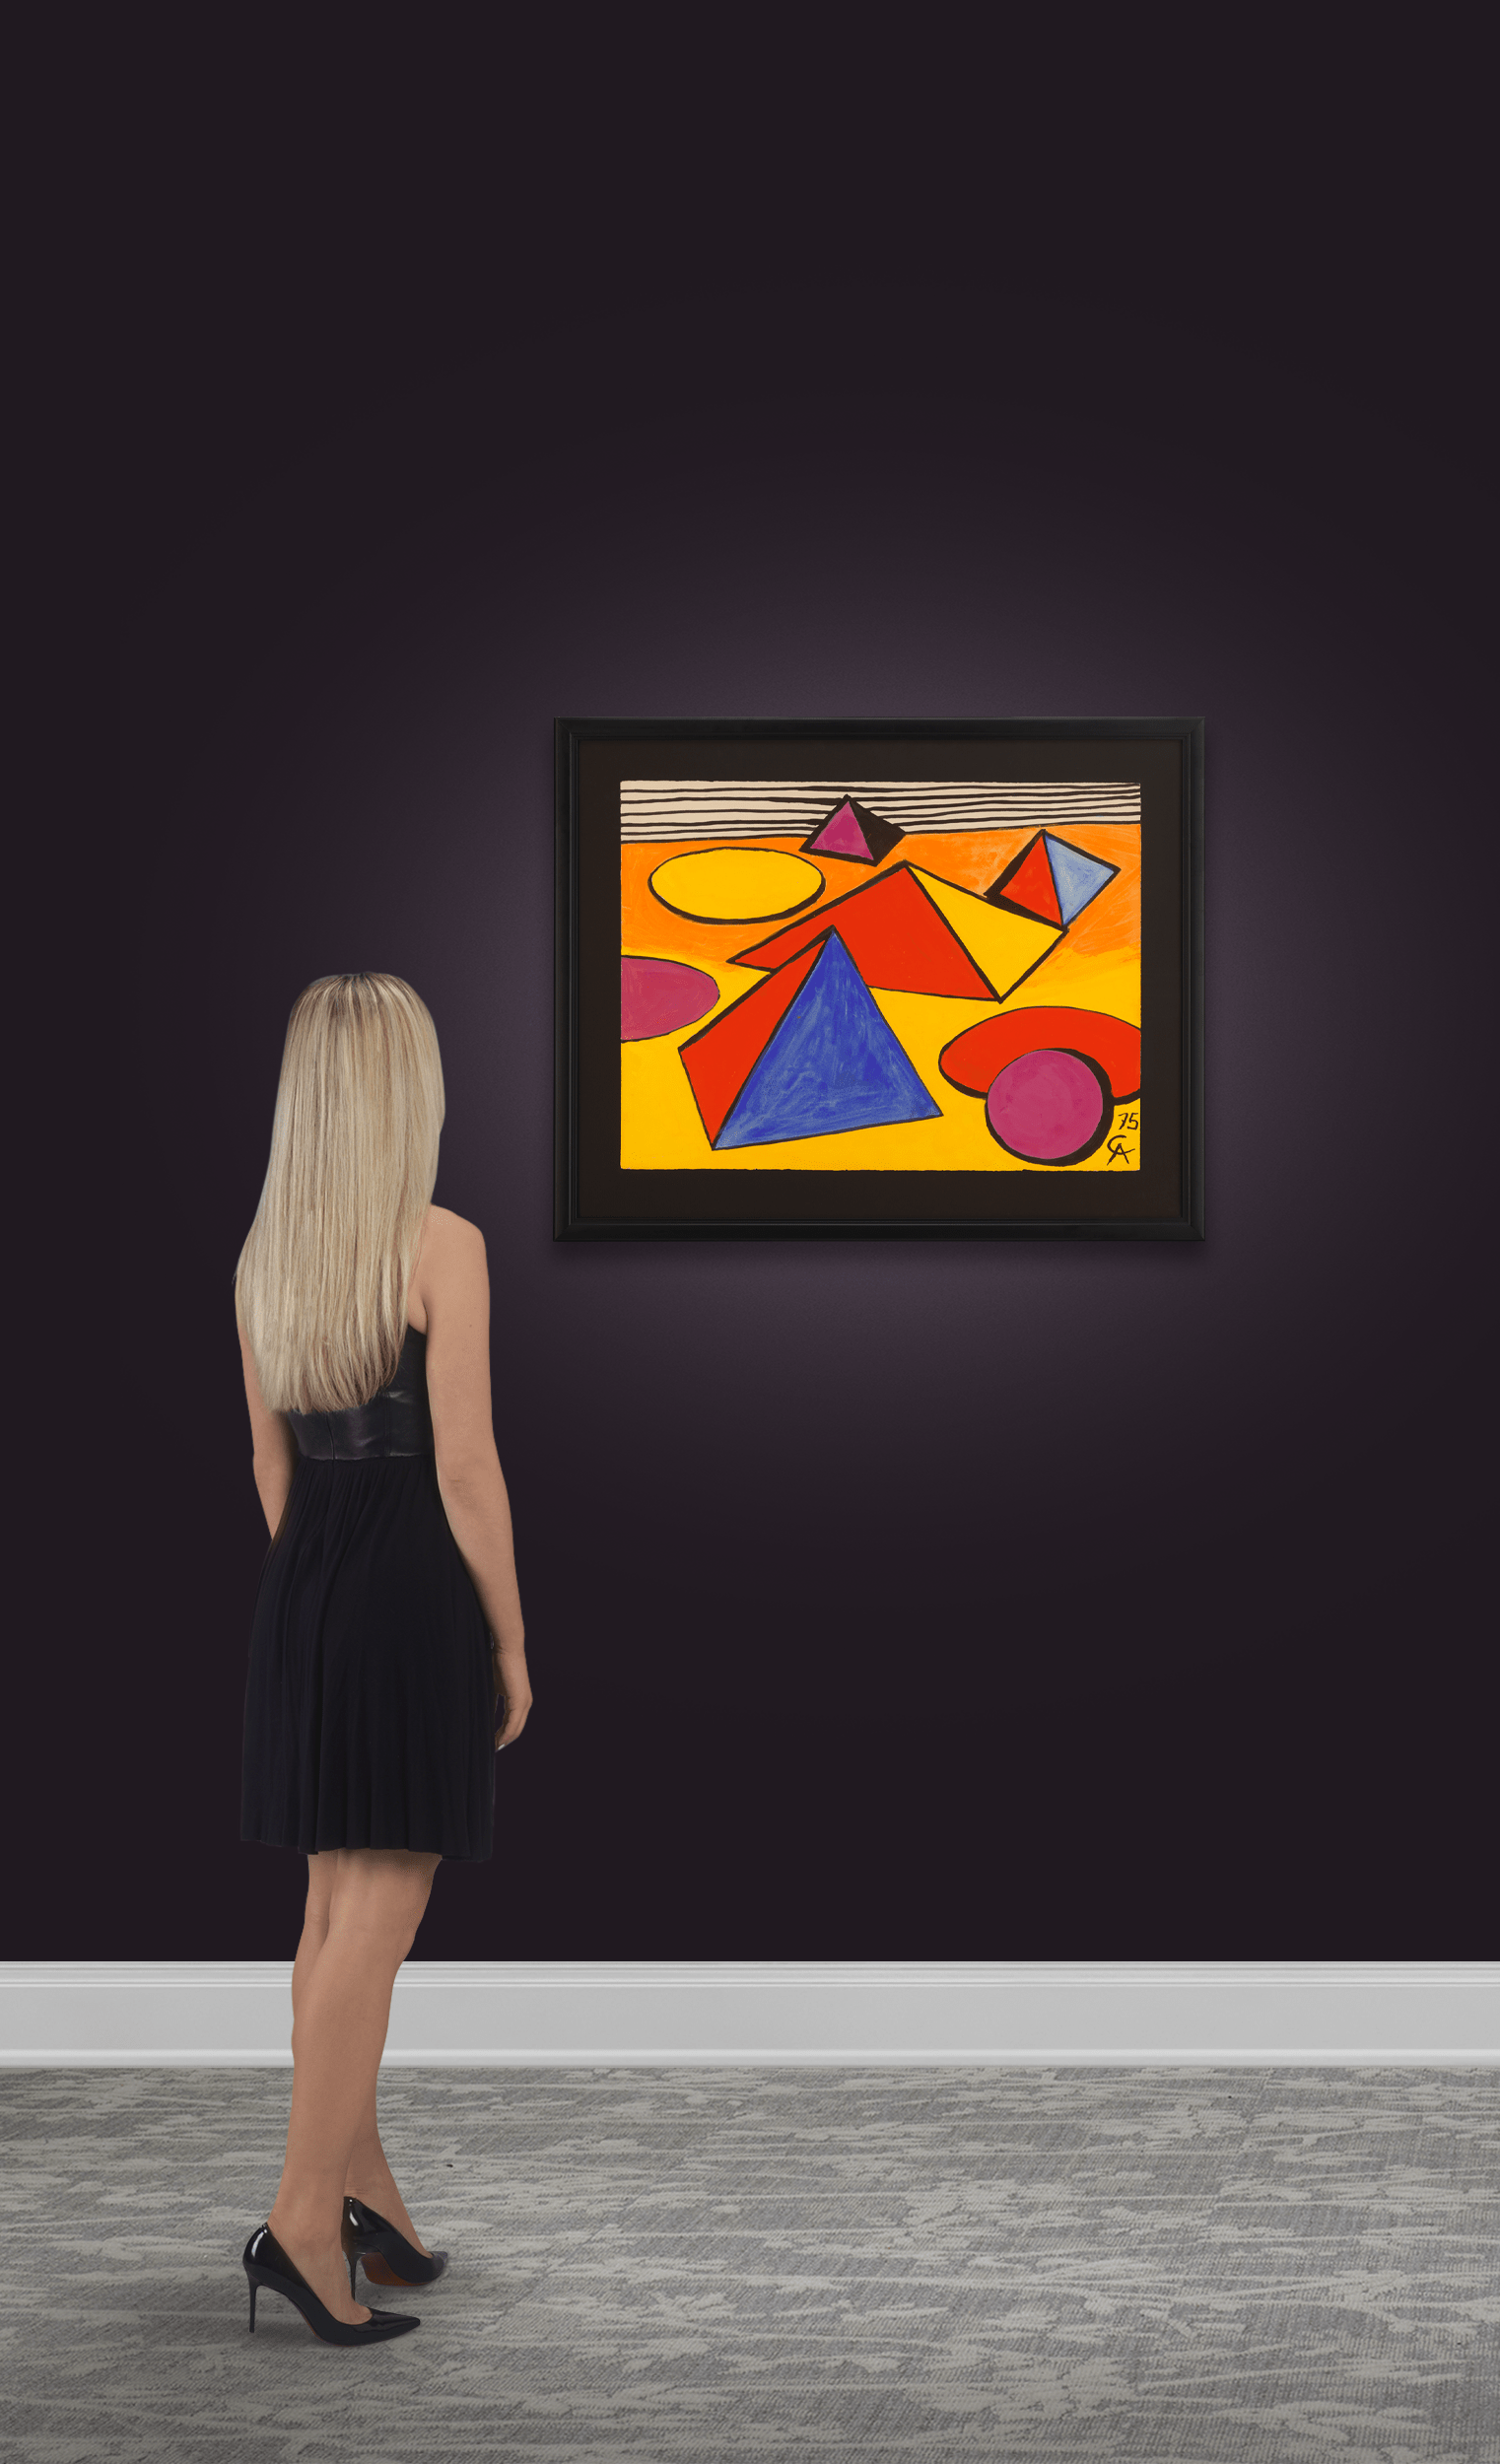 Mer de sable by Alexander Calder